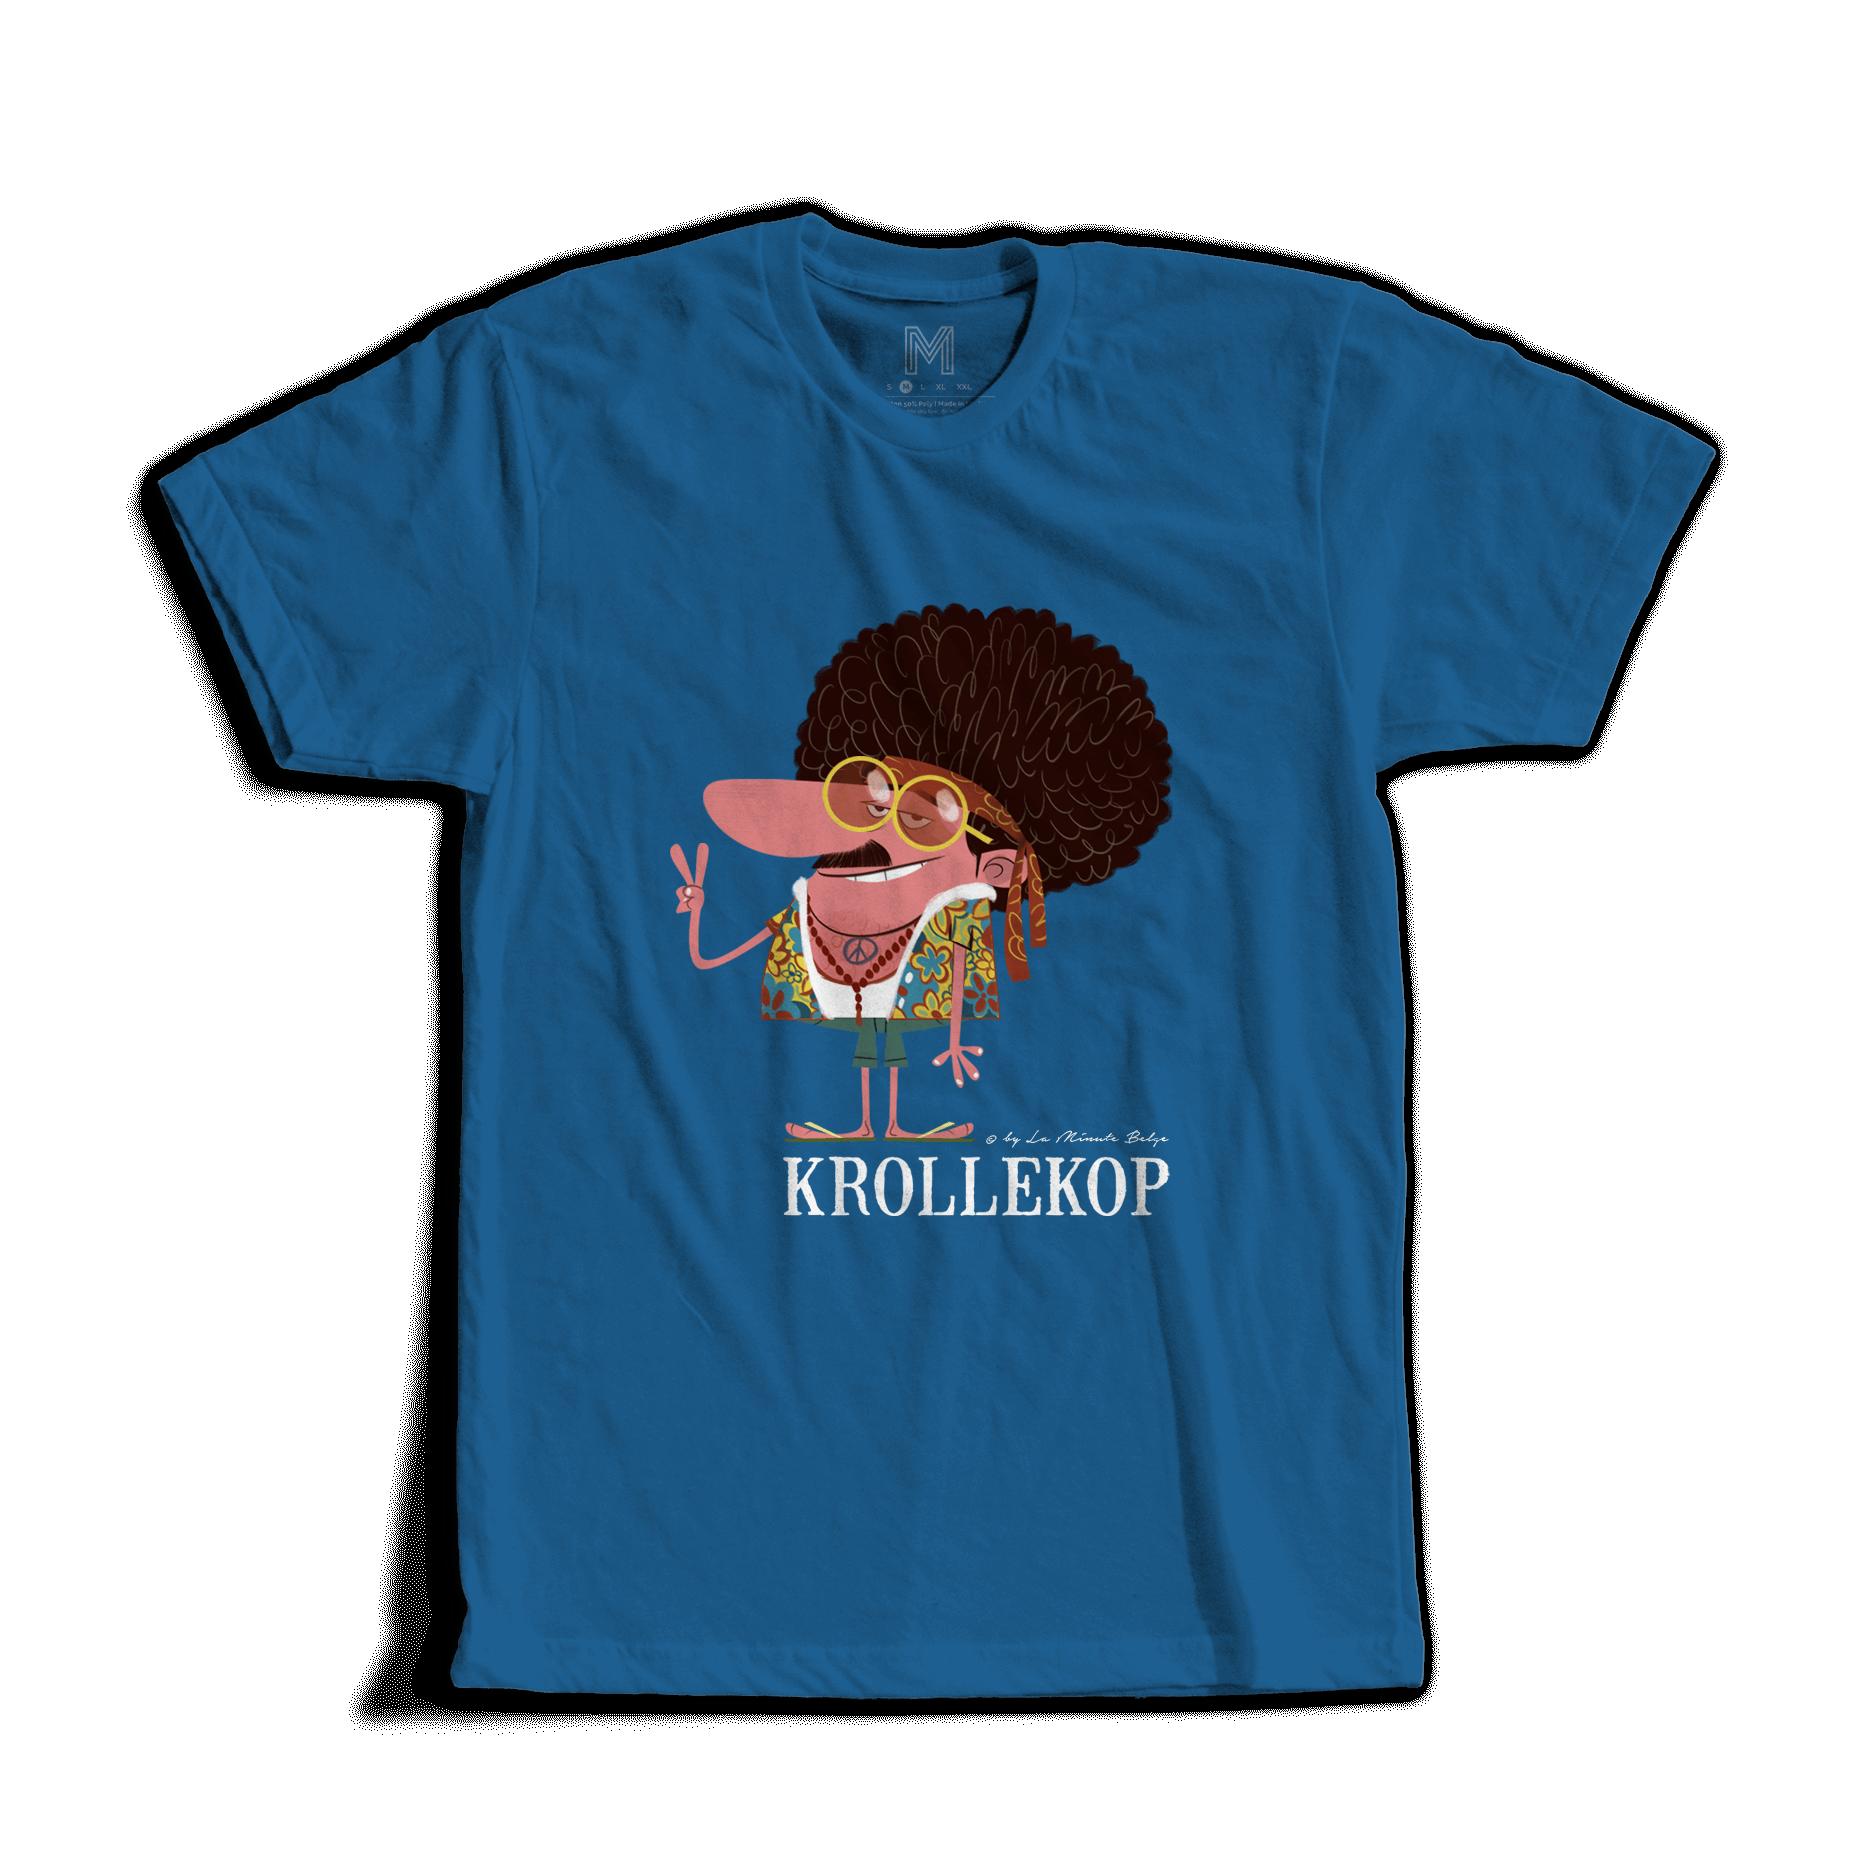 Krollekop - T-shirt La Minute Belge 